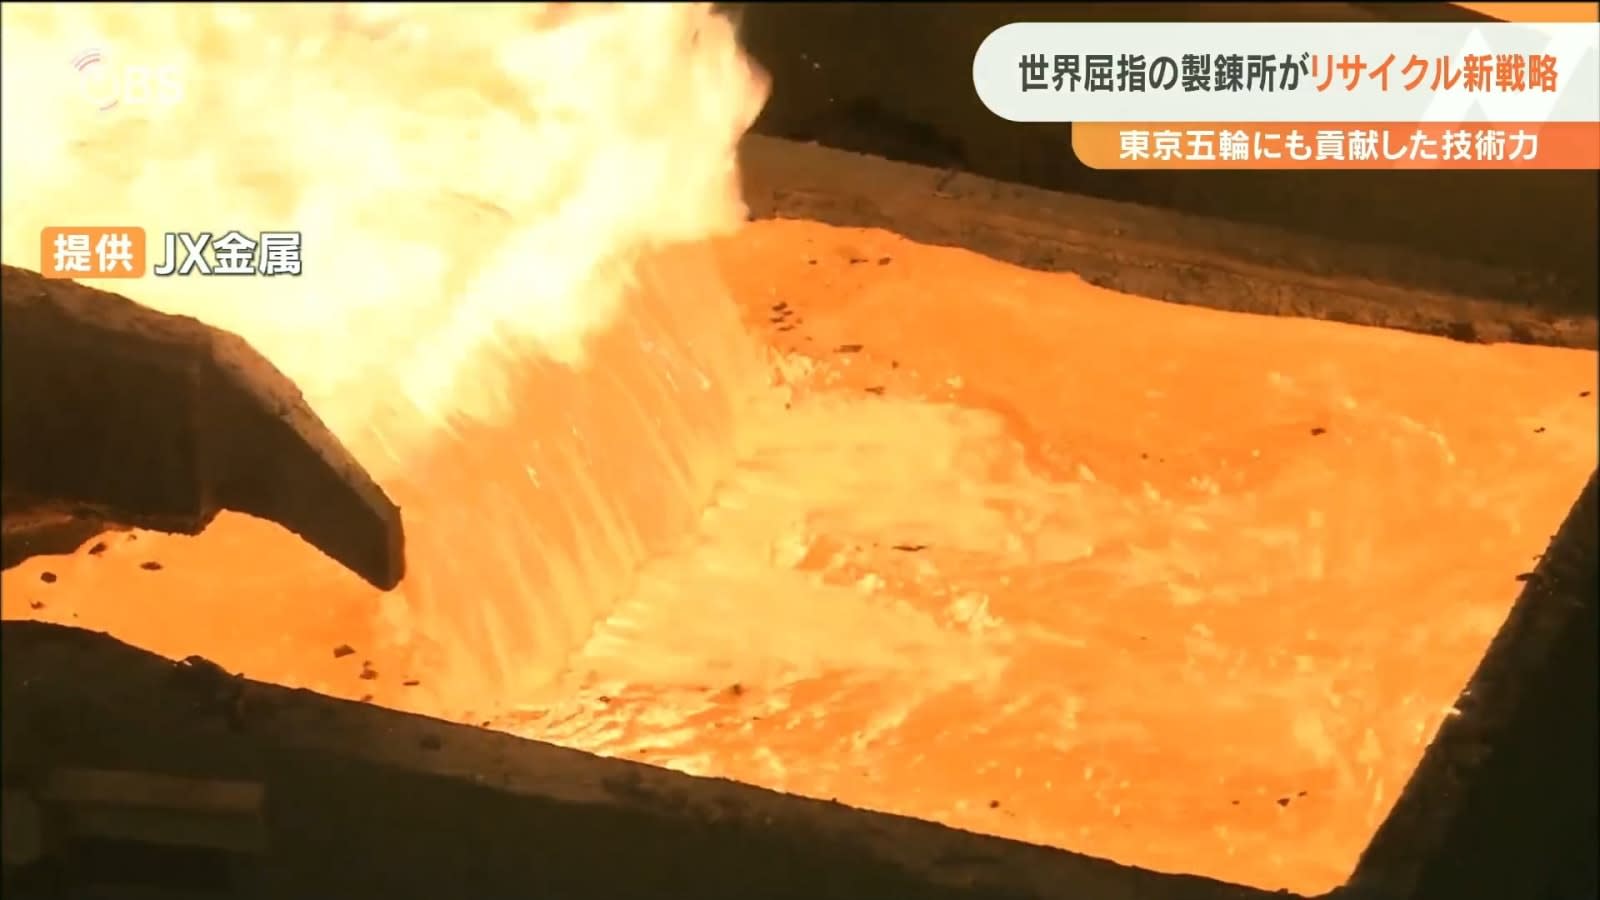 東京五輪の銅メダル原料は大分産 JX金属製錬の世界に向けた新しい戦略